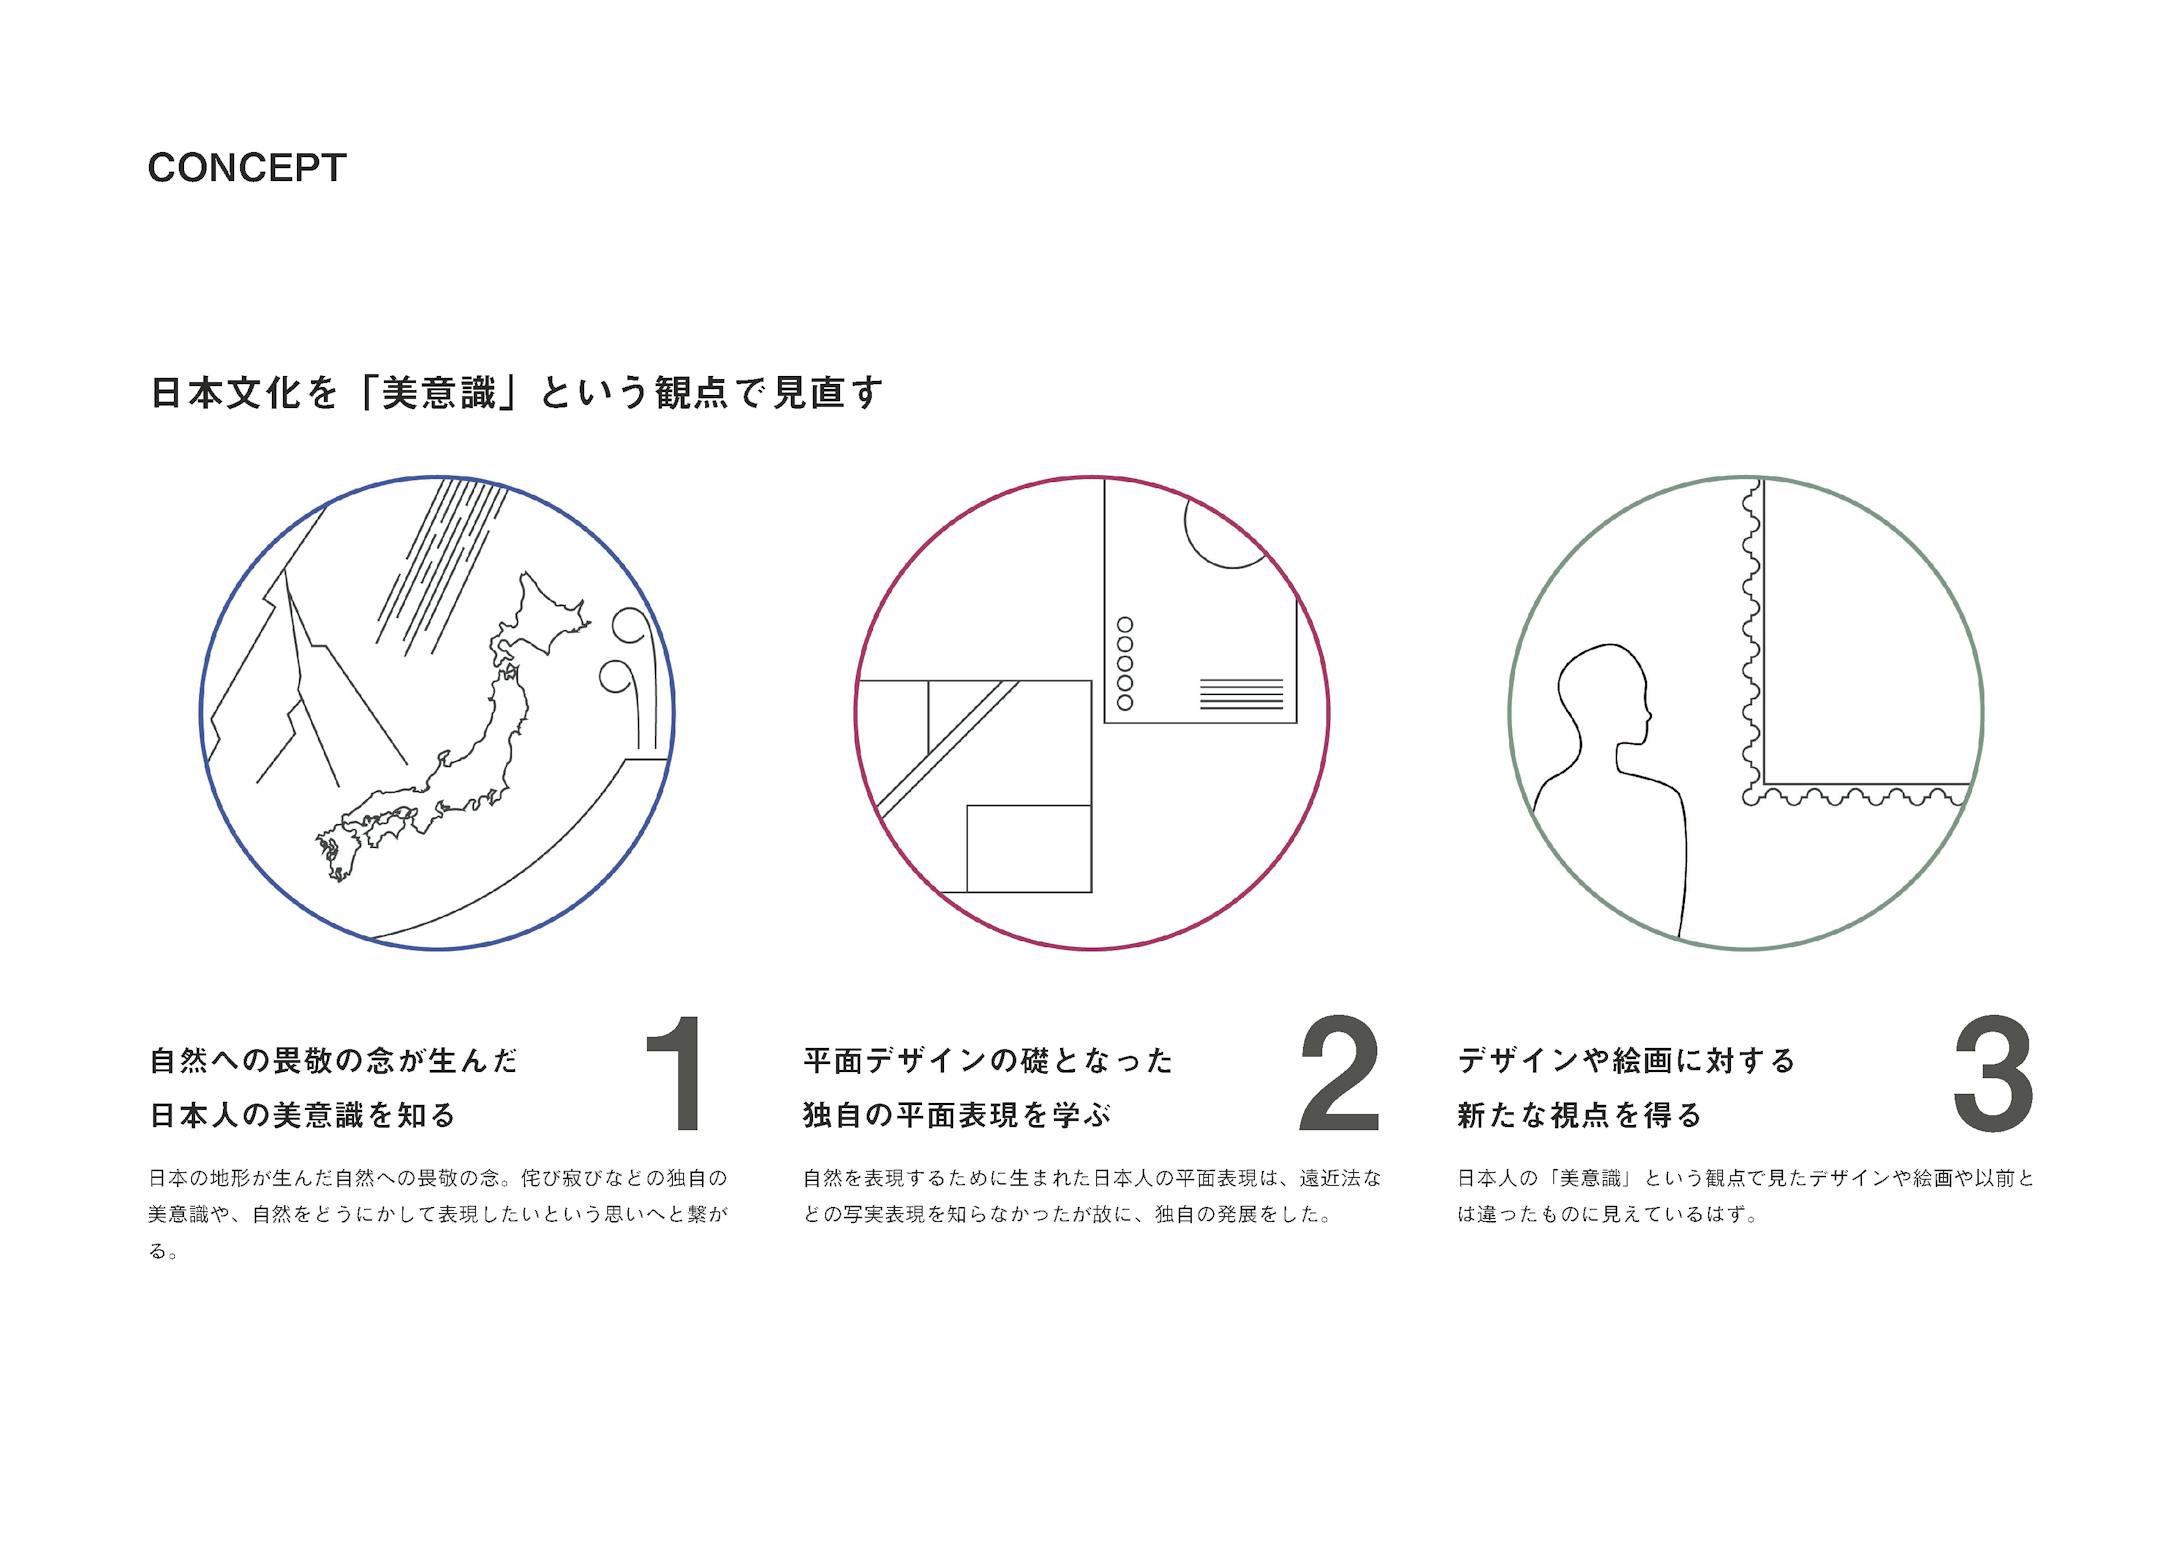 インフォグラフィック『日本画から学ぶ平面表現』-2